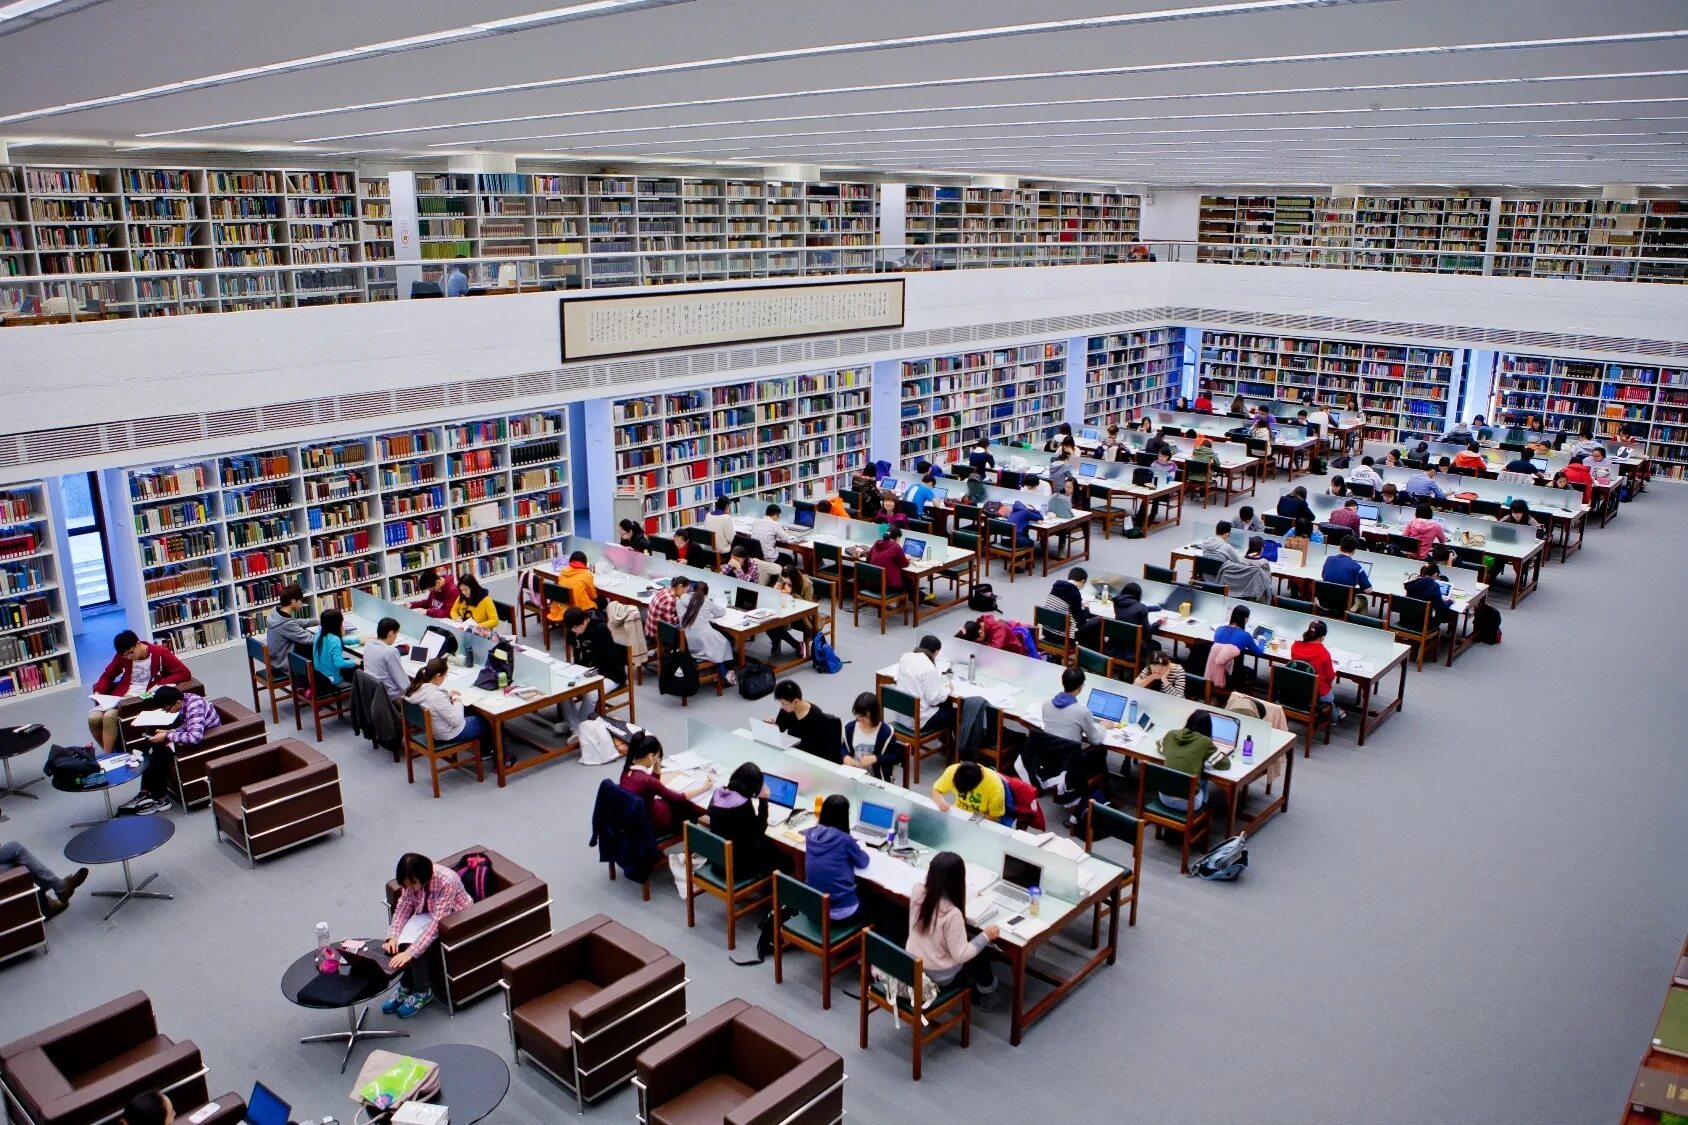 Сайты библиотек университетов. Стэнфорд университет библиотека. Принстон университет библиотека. Библиотека университета Цинхуа в Пекине;. Бинхай университет.